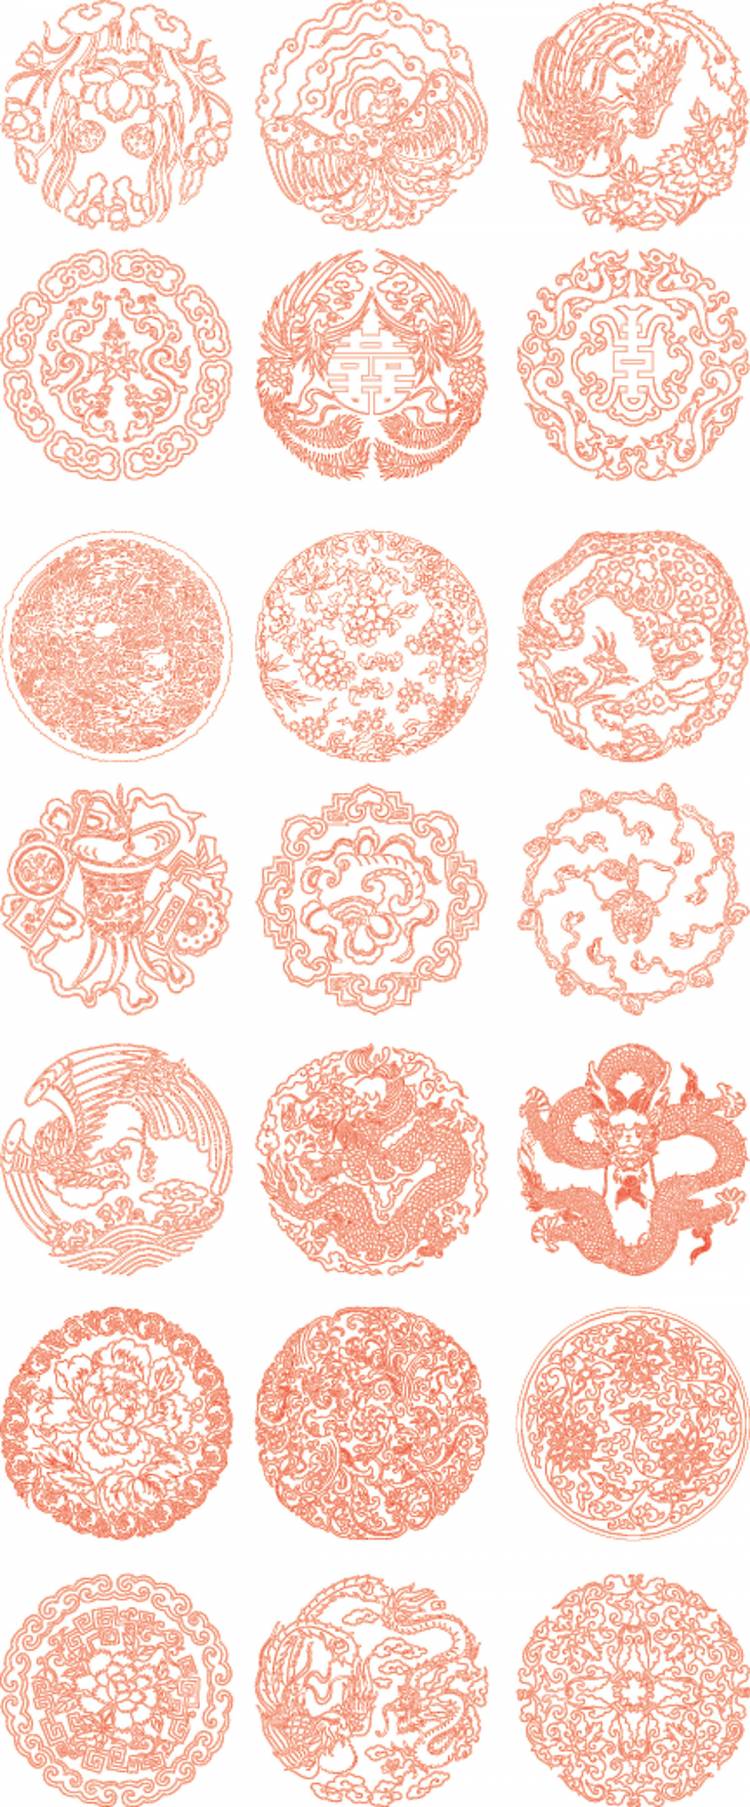 Китайский традиционный орнамент вектор материала PNG , Дракон, Феникс, Классическая модель PNG картинки и пнг рисунок для бесплатной загрузки